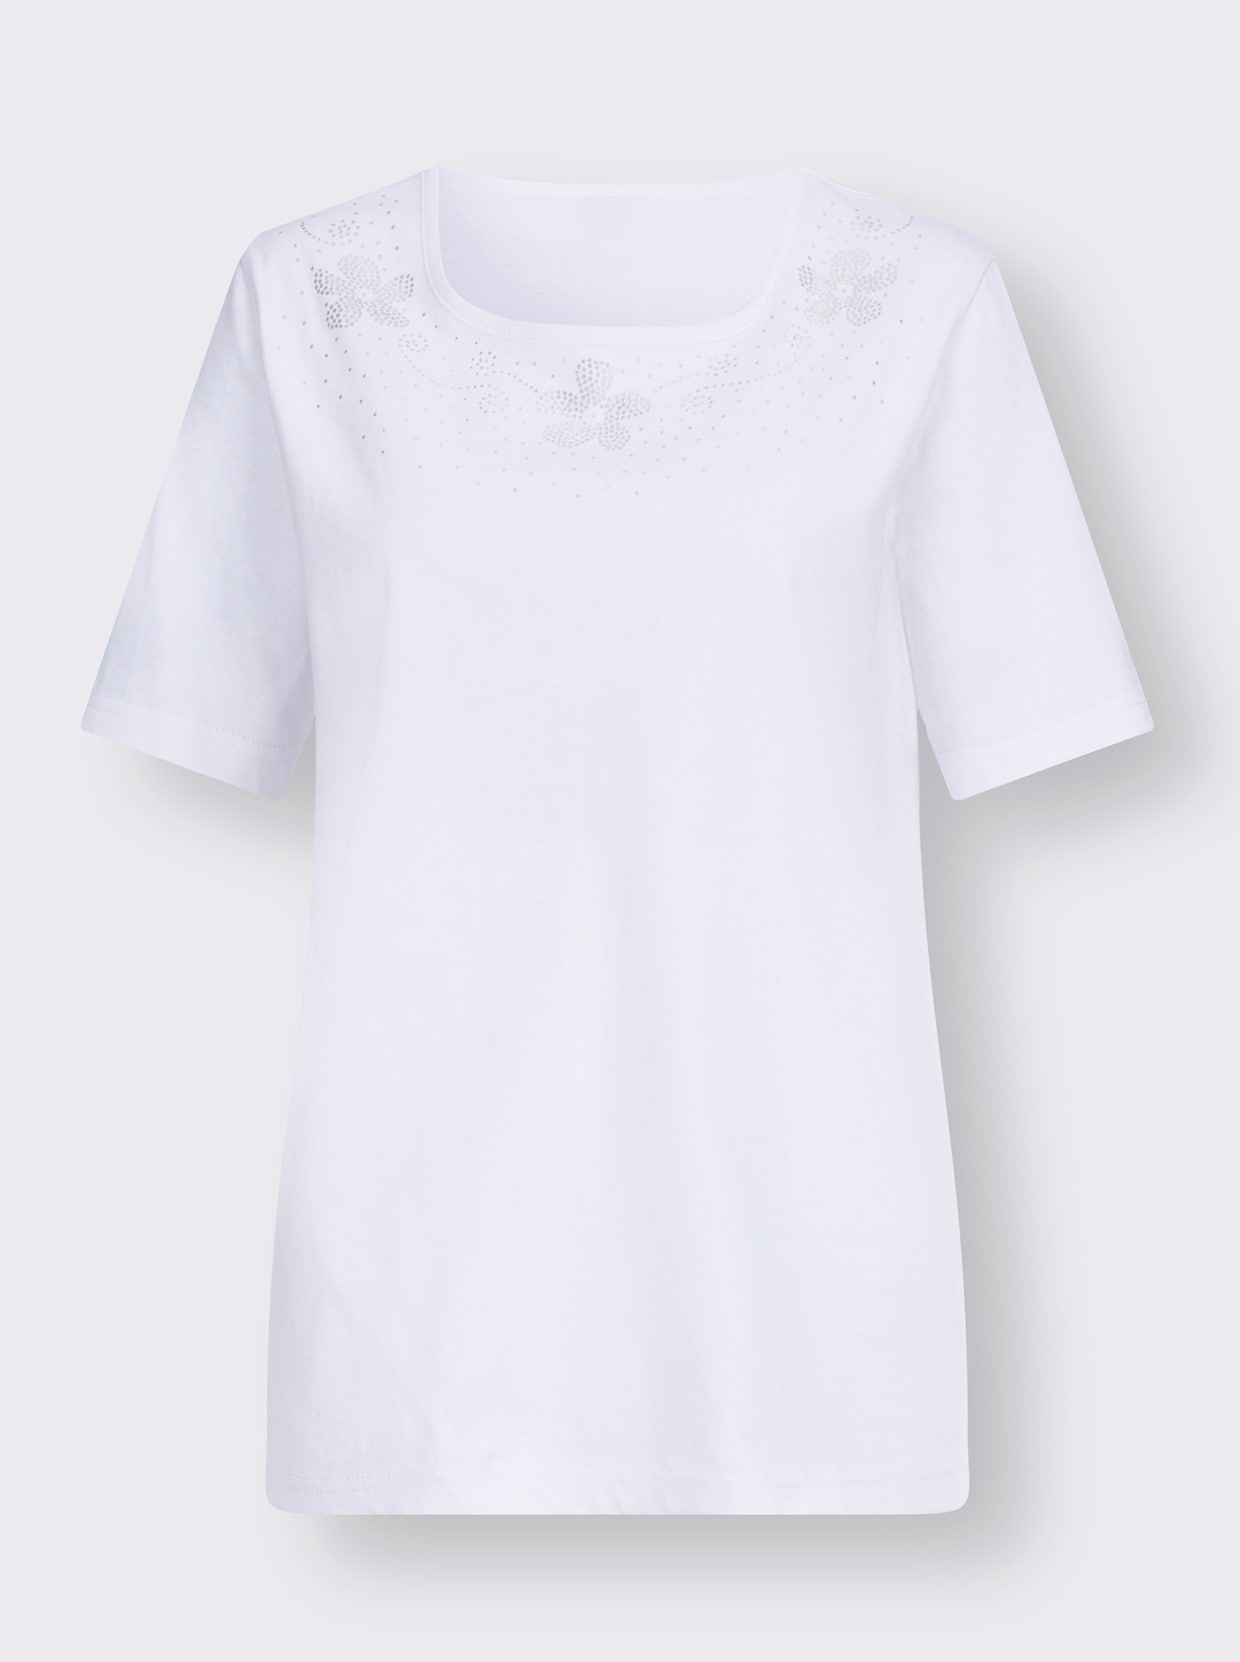 Tričko s krátkým rukávem - bílá-stříbrná